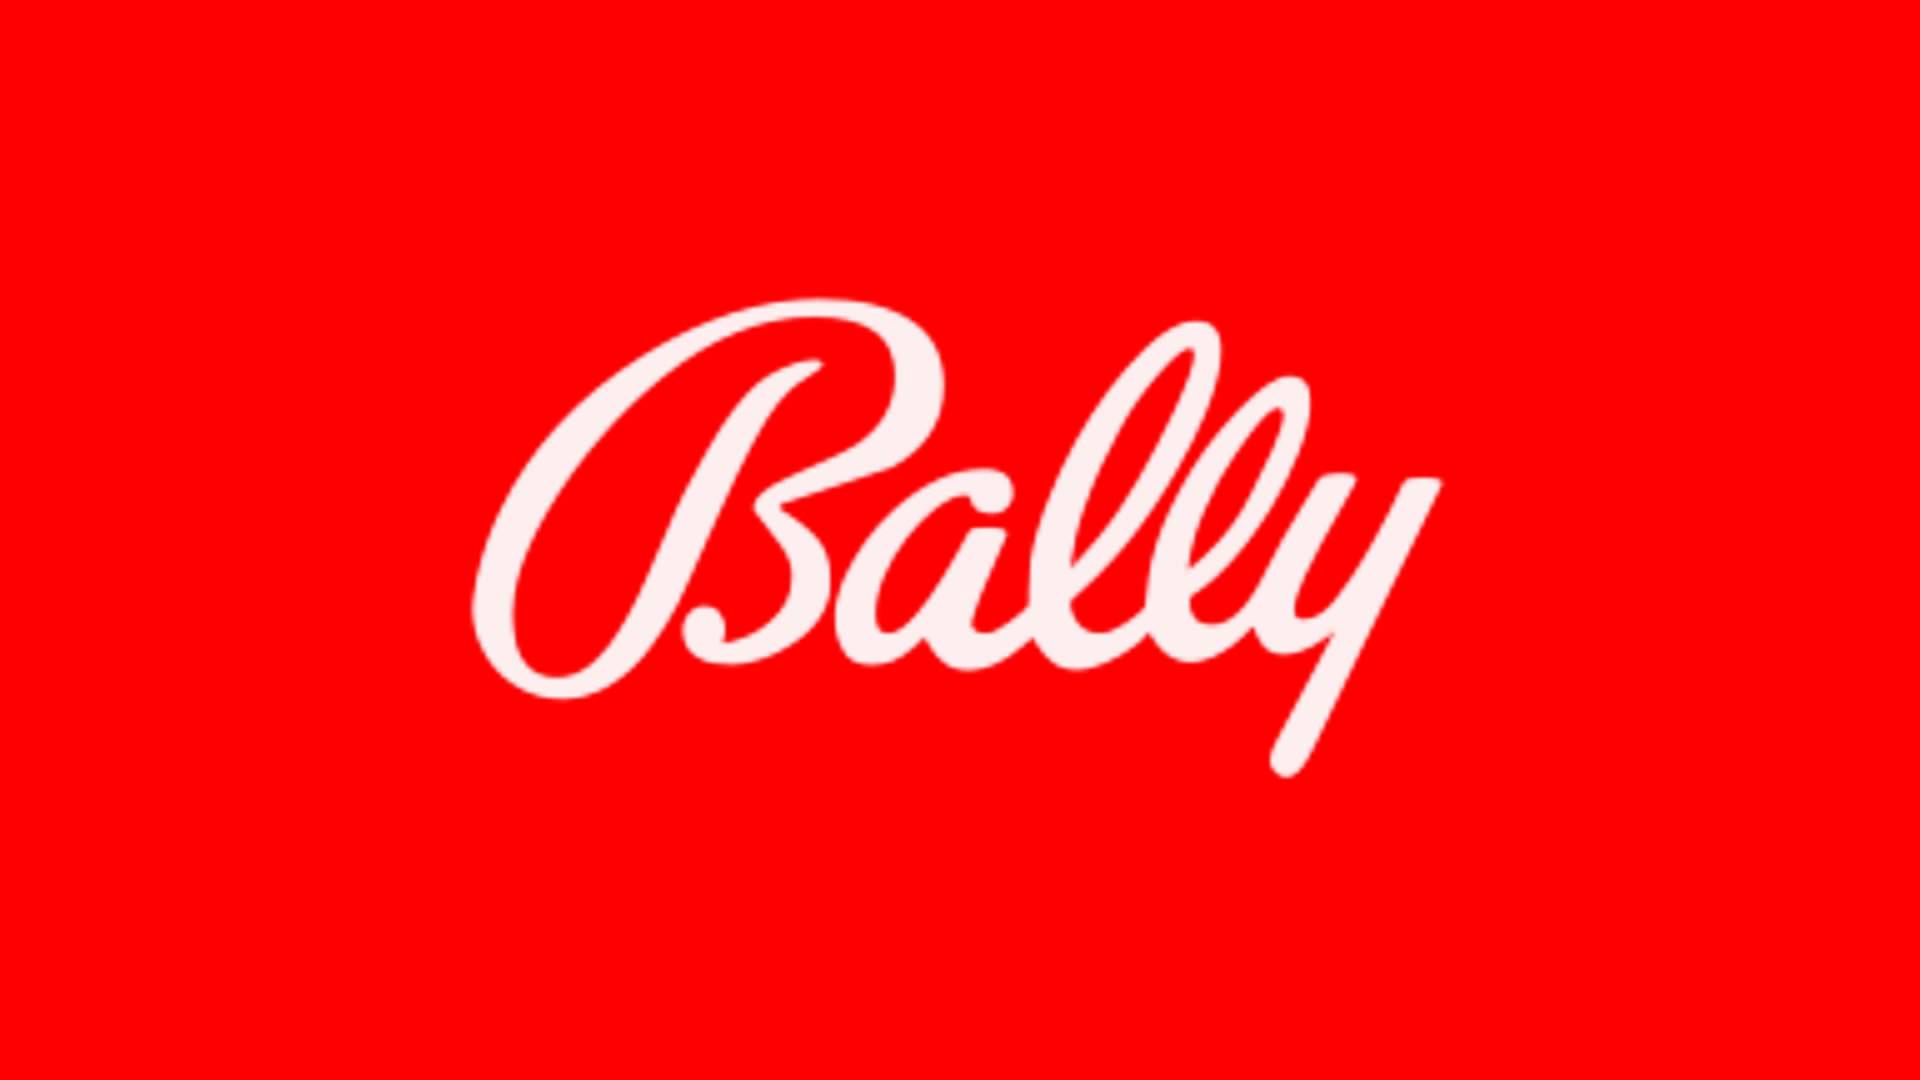 Bally Midway Logo - Bally Logos